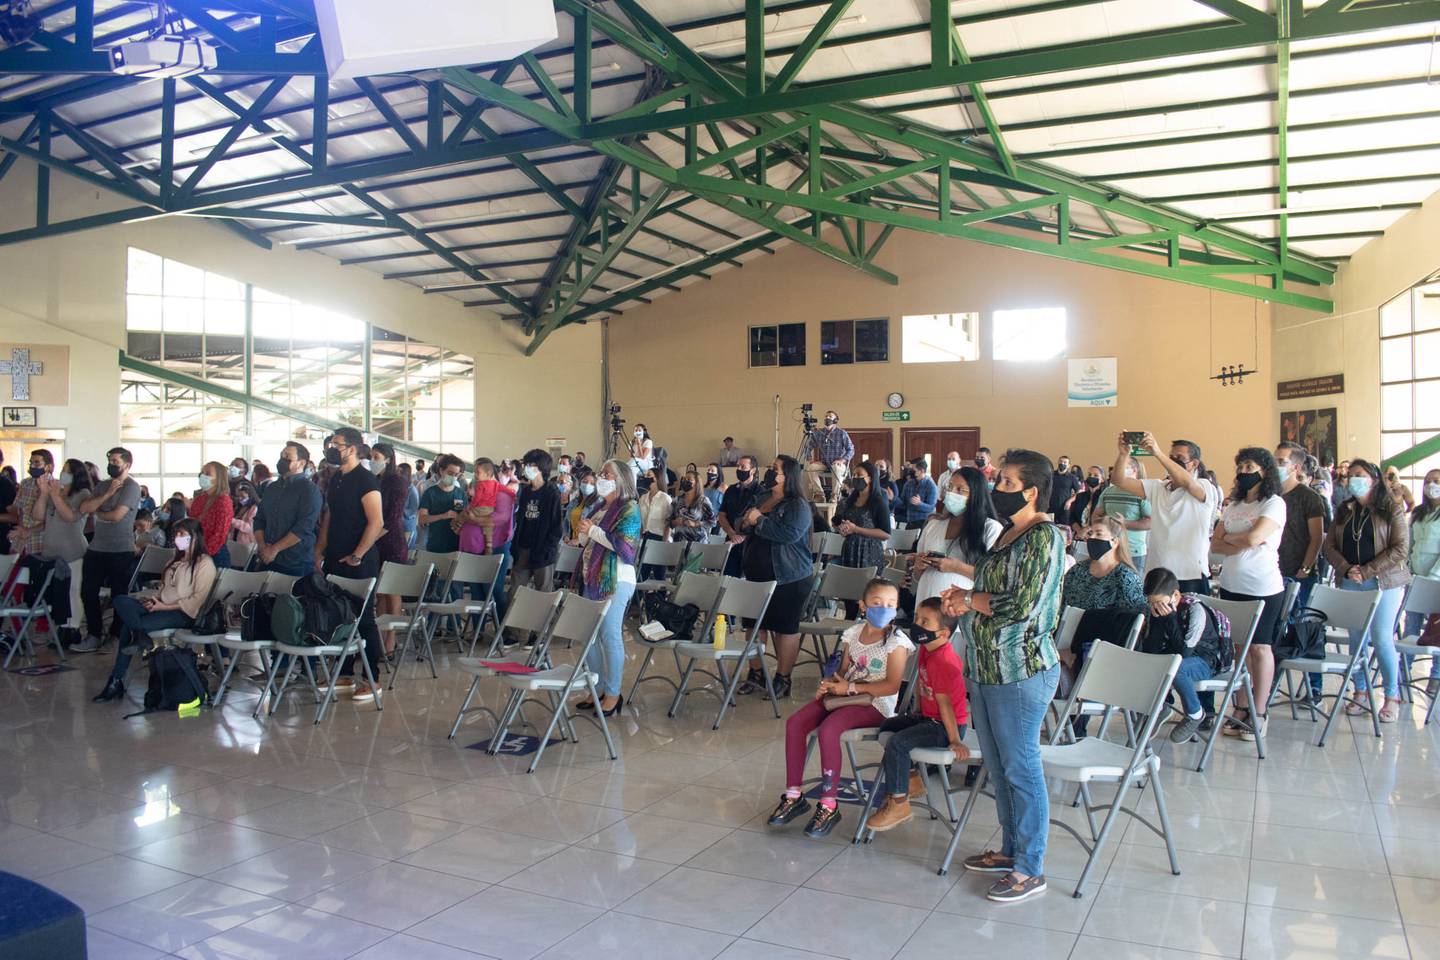 La iglesia Comunidad Cristiana Shalom nace como un proyecto social que tiene más de 26 años de estar ayudando a la comunidad de Fraijanes en Alajuela, en temas vitales como: salud, vivienda, educación, apoyo social y espiritual.